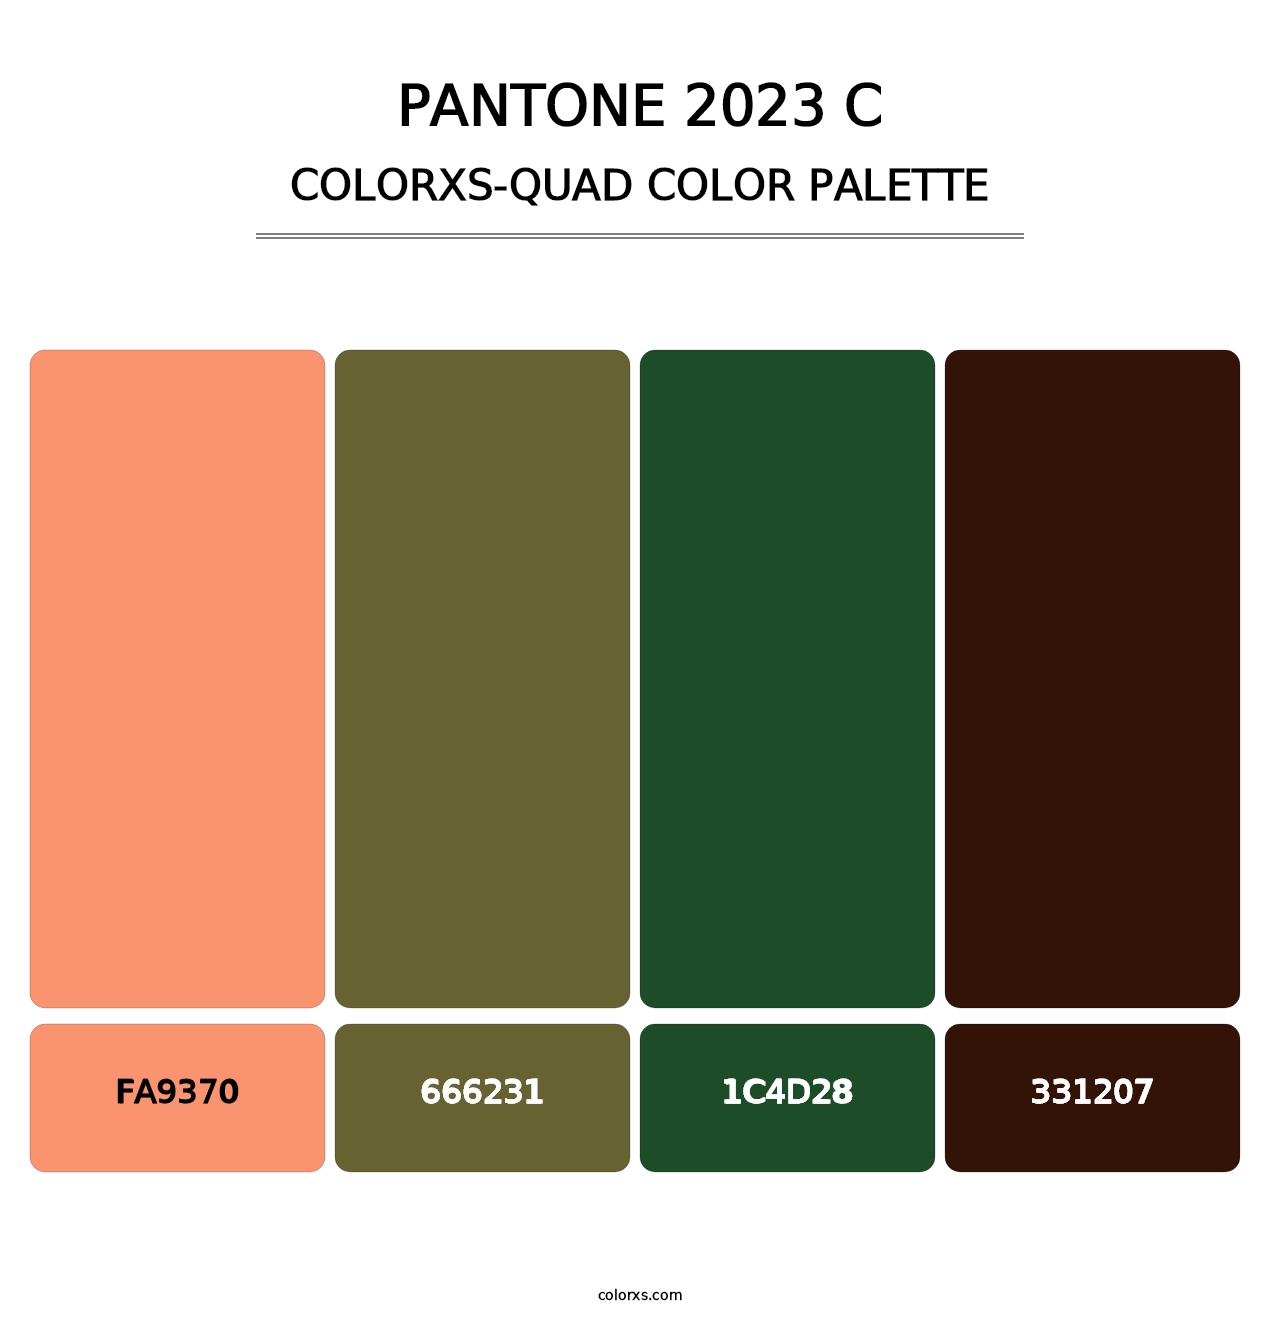 PANTONE 2023 C - Colorxs Quad Palette